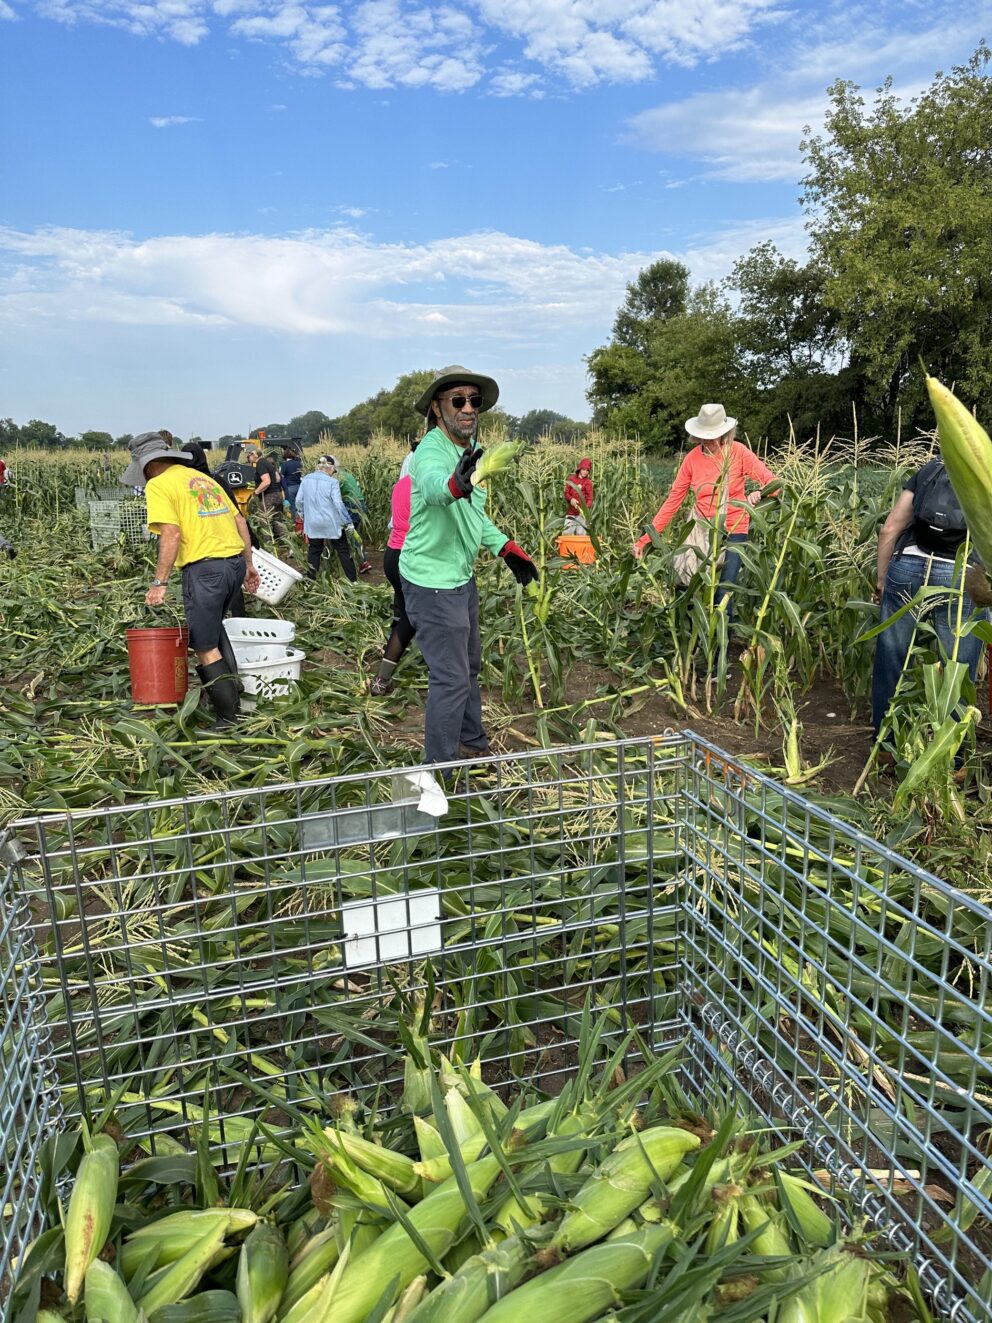 volunteers pick sweet corn at a farm